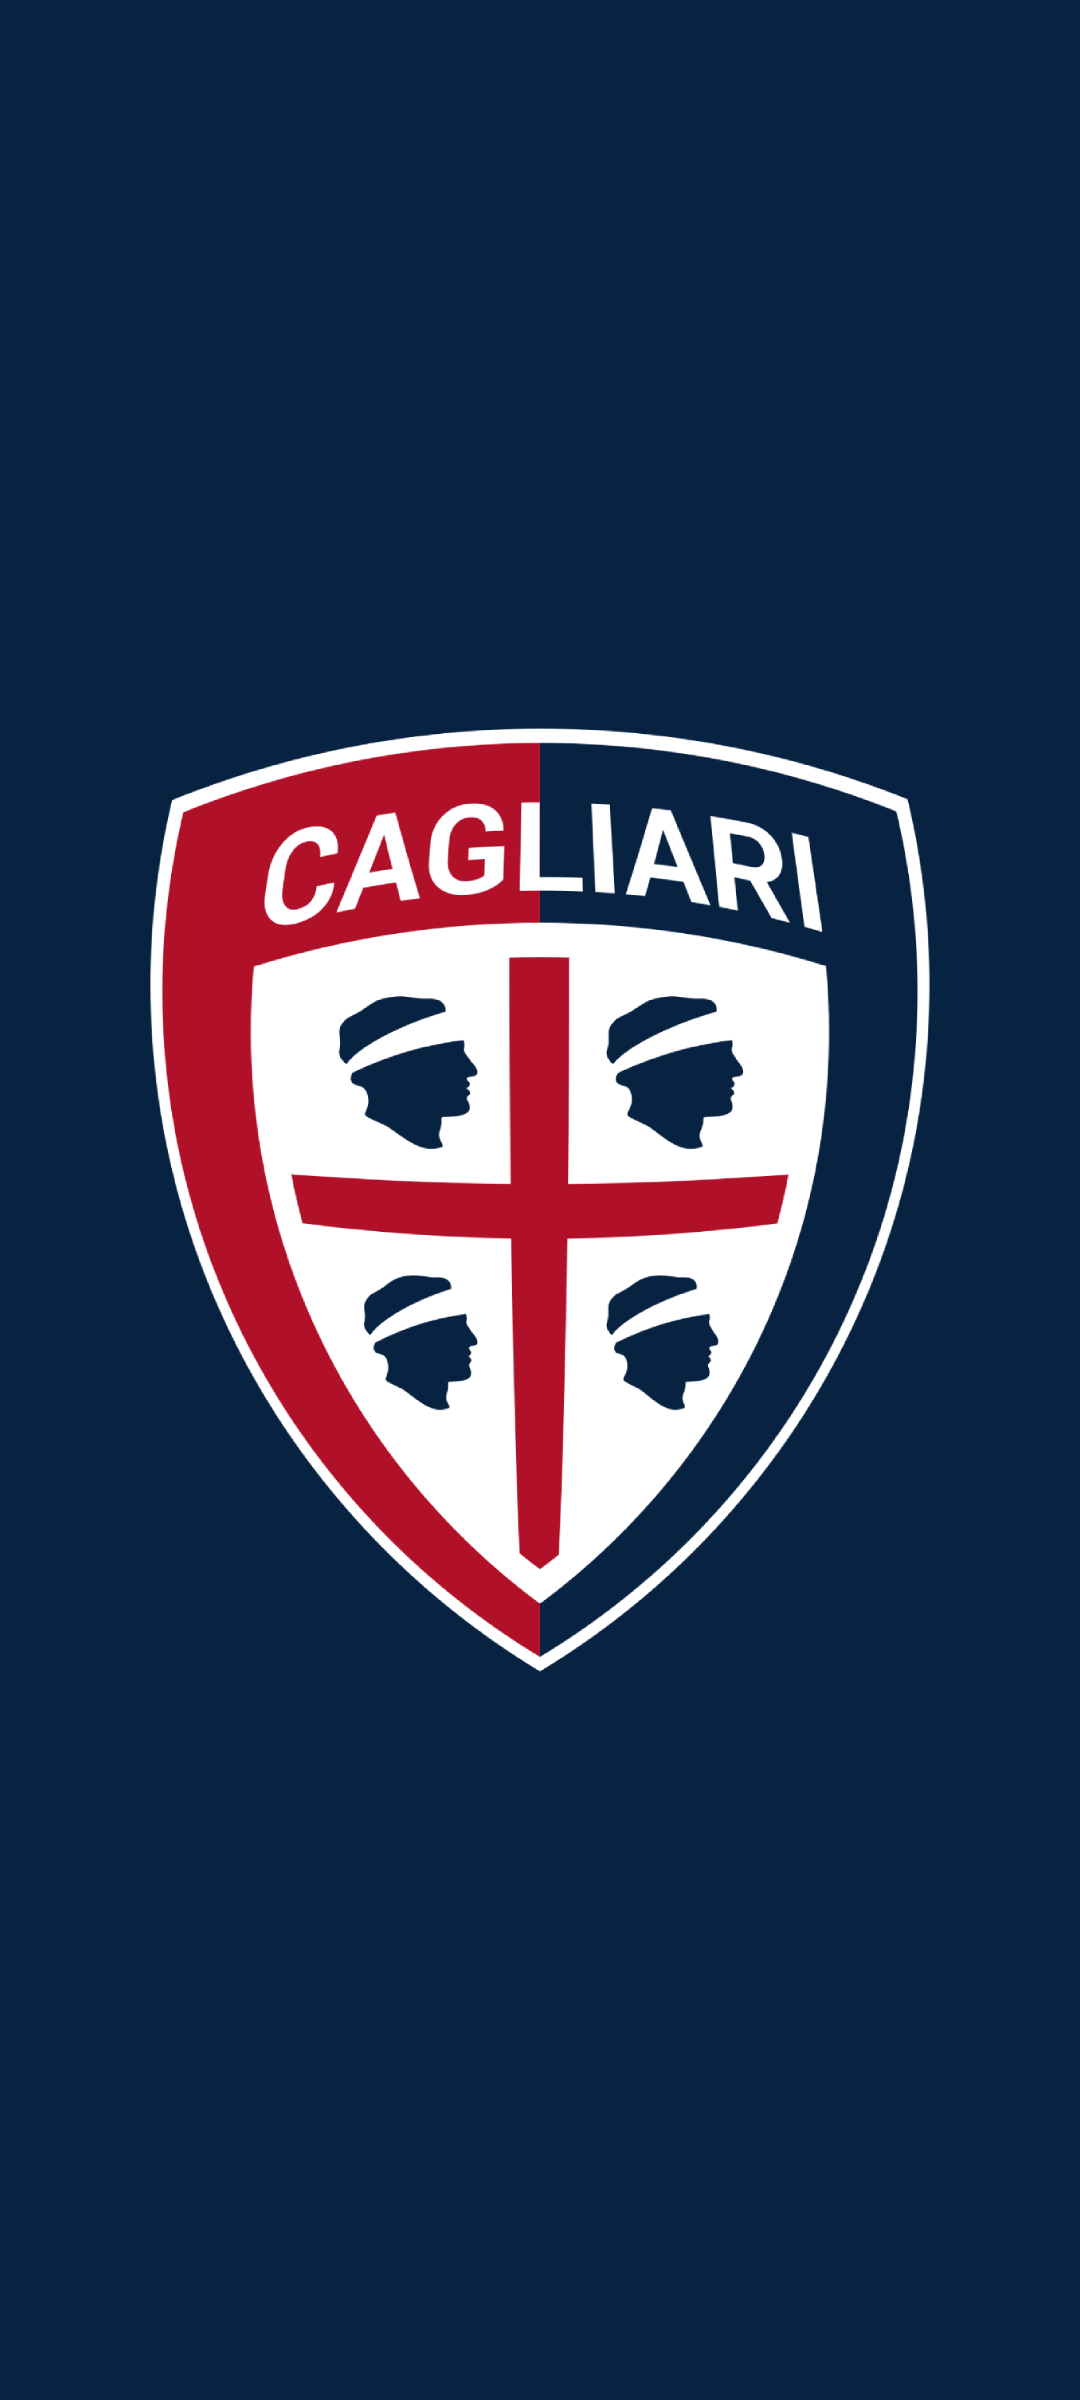 カリアリ カルチョ Cagliari Calcio Oppo Reno3 A 壁紙 待ち受け Sumaran